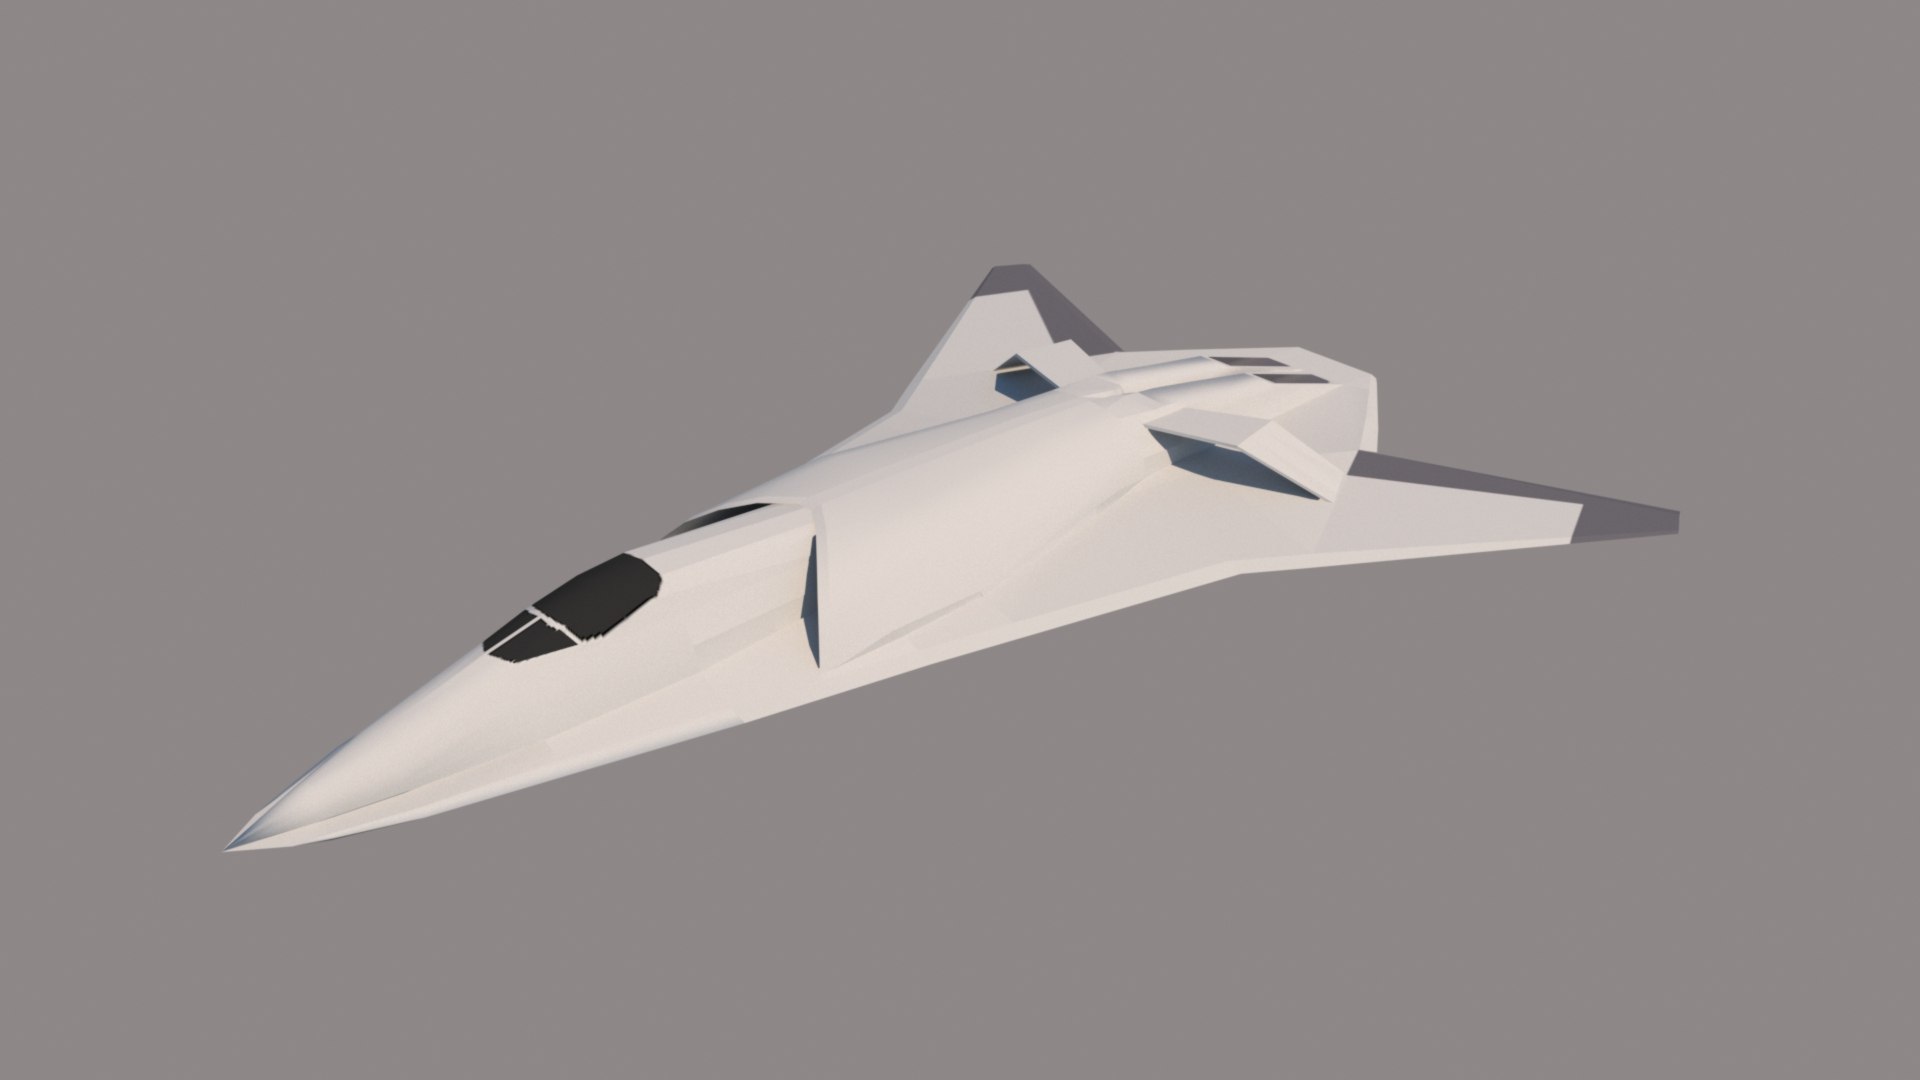 3D European 6th Gen Fighter Concept Model - TurboSquid 1953922